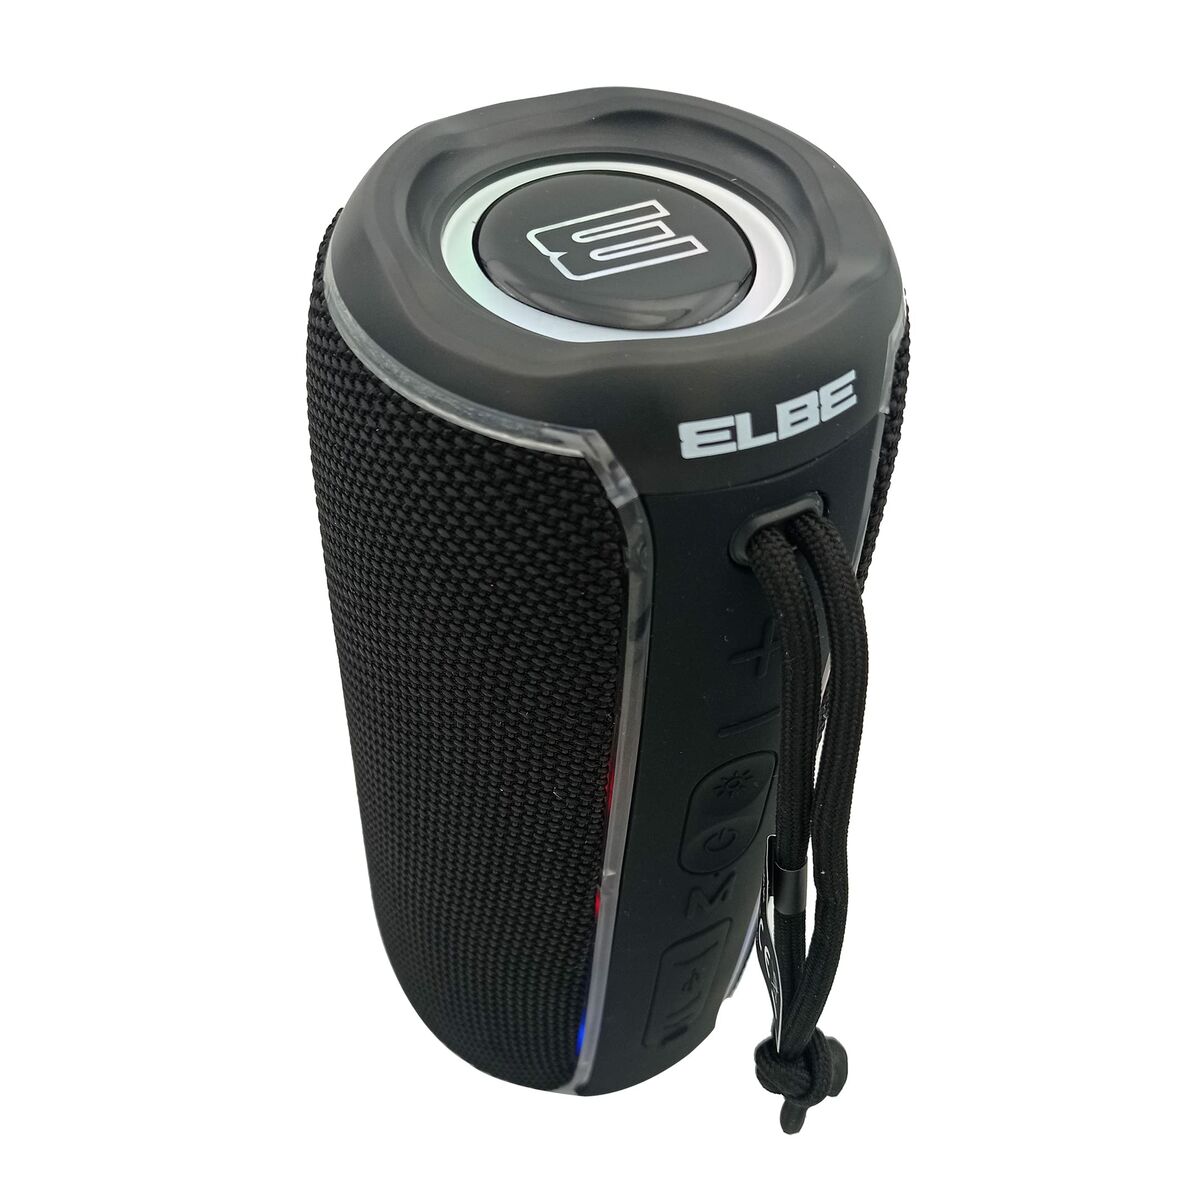 Tragbarer Lautsprecher ELBE ALTN12TWS 20W Bluetooth Schwarz